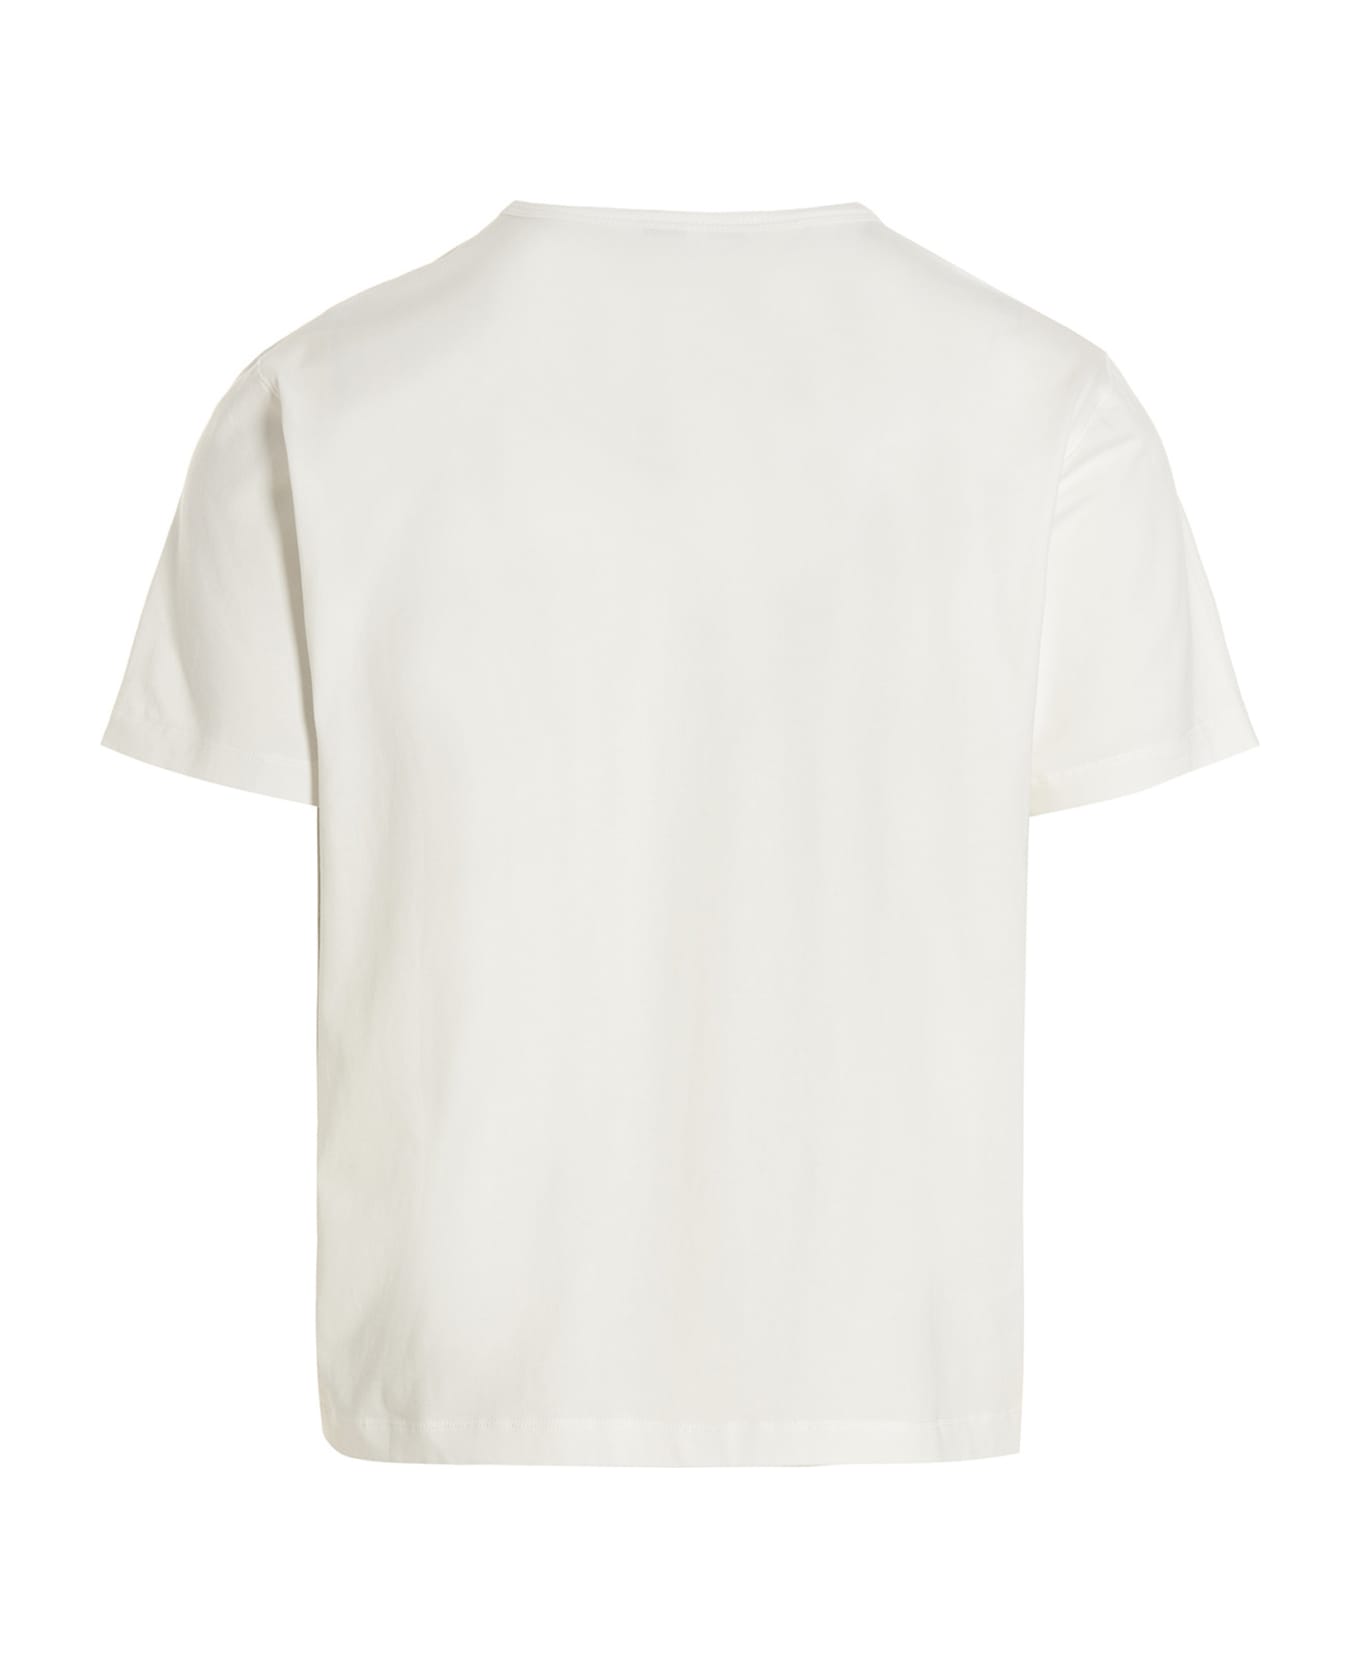 Rold Skov Printed T-shirt - White